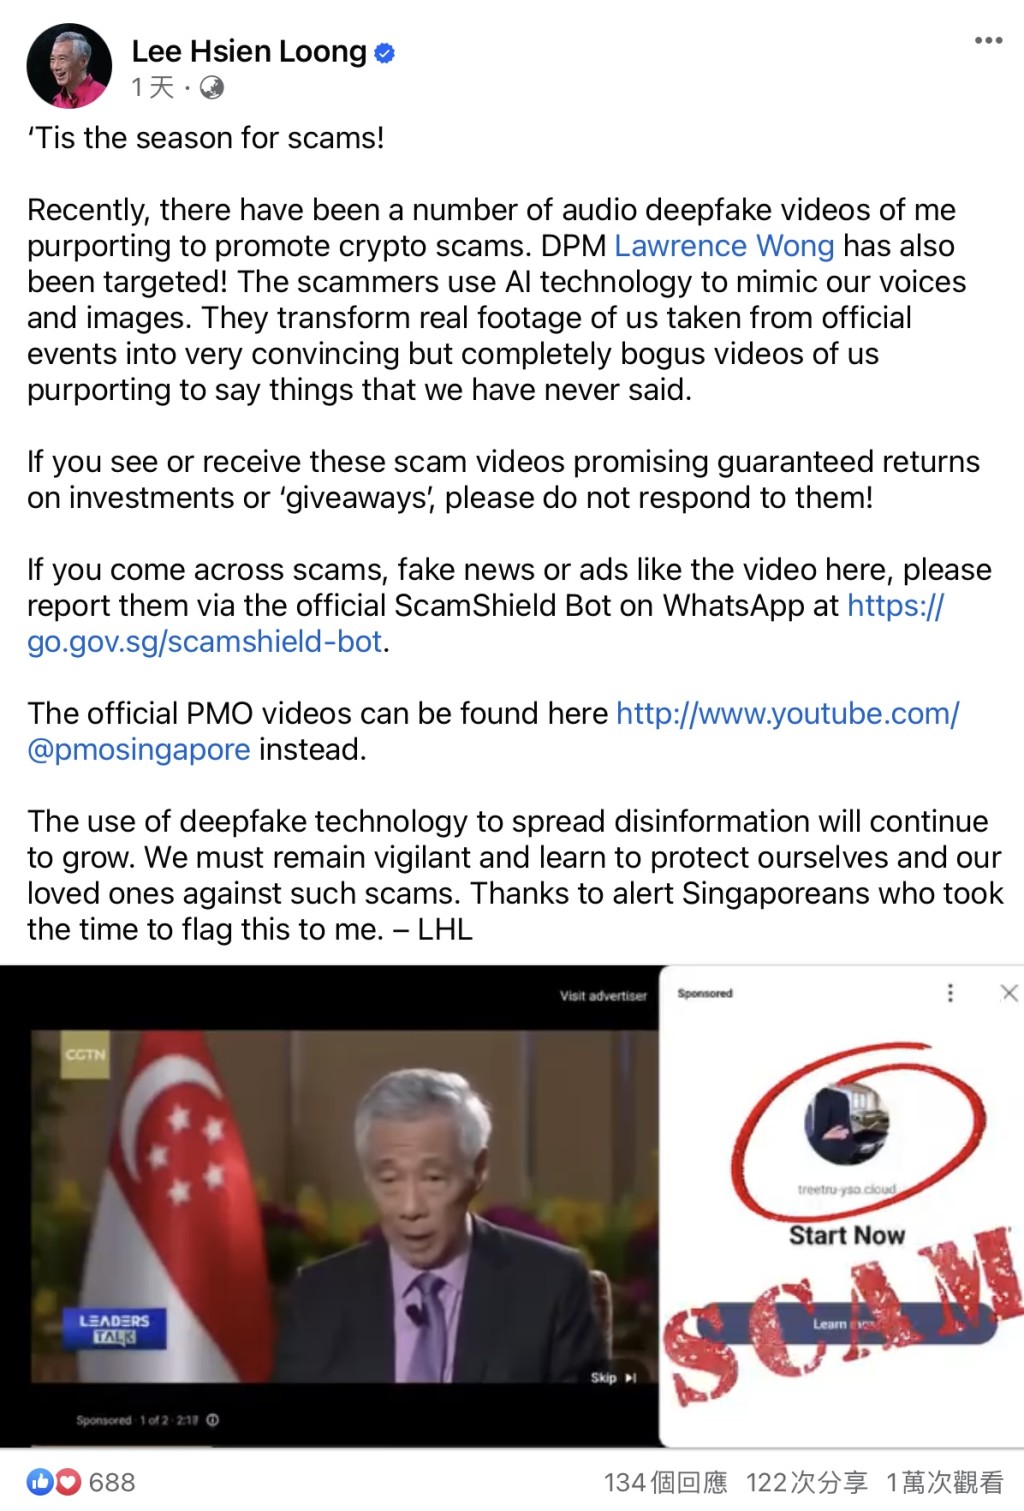 李顯龍貼出一小段Deepfake影片，呼籲民眾提防加密貨幣騙局。